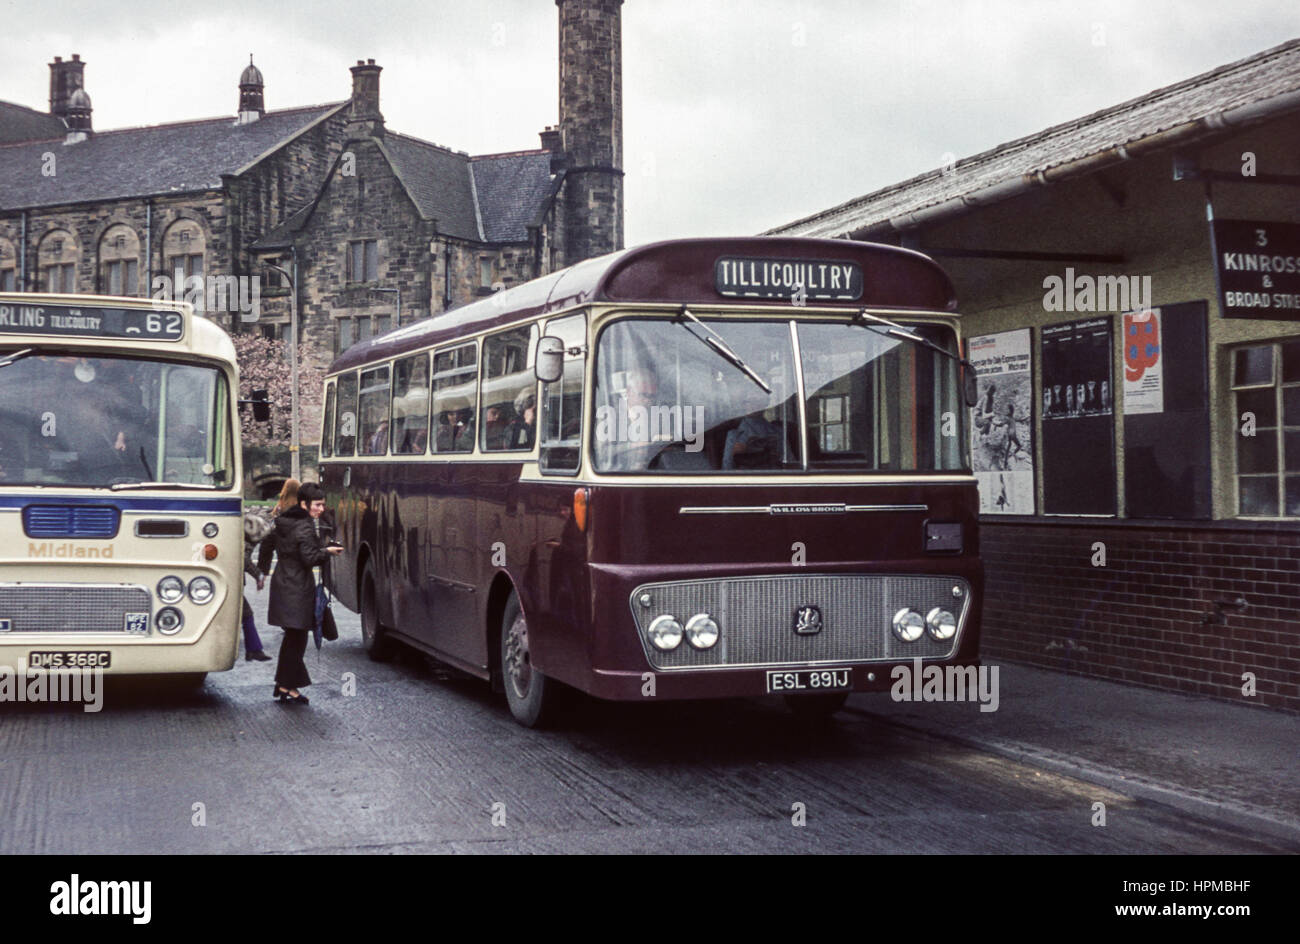 Escocia, Reino Unido - 1973: Vintage imagen de autobuses. Midland Leyland MPE 82 (número de registro DMS 368C) y Halley Bedford YRQ Willowbrook (registro ESL 891J). Foto de stock